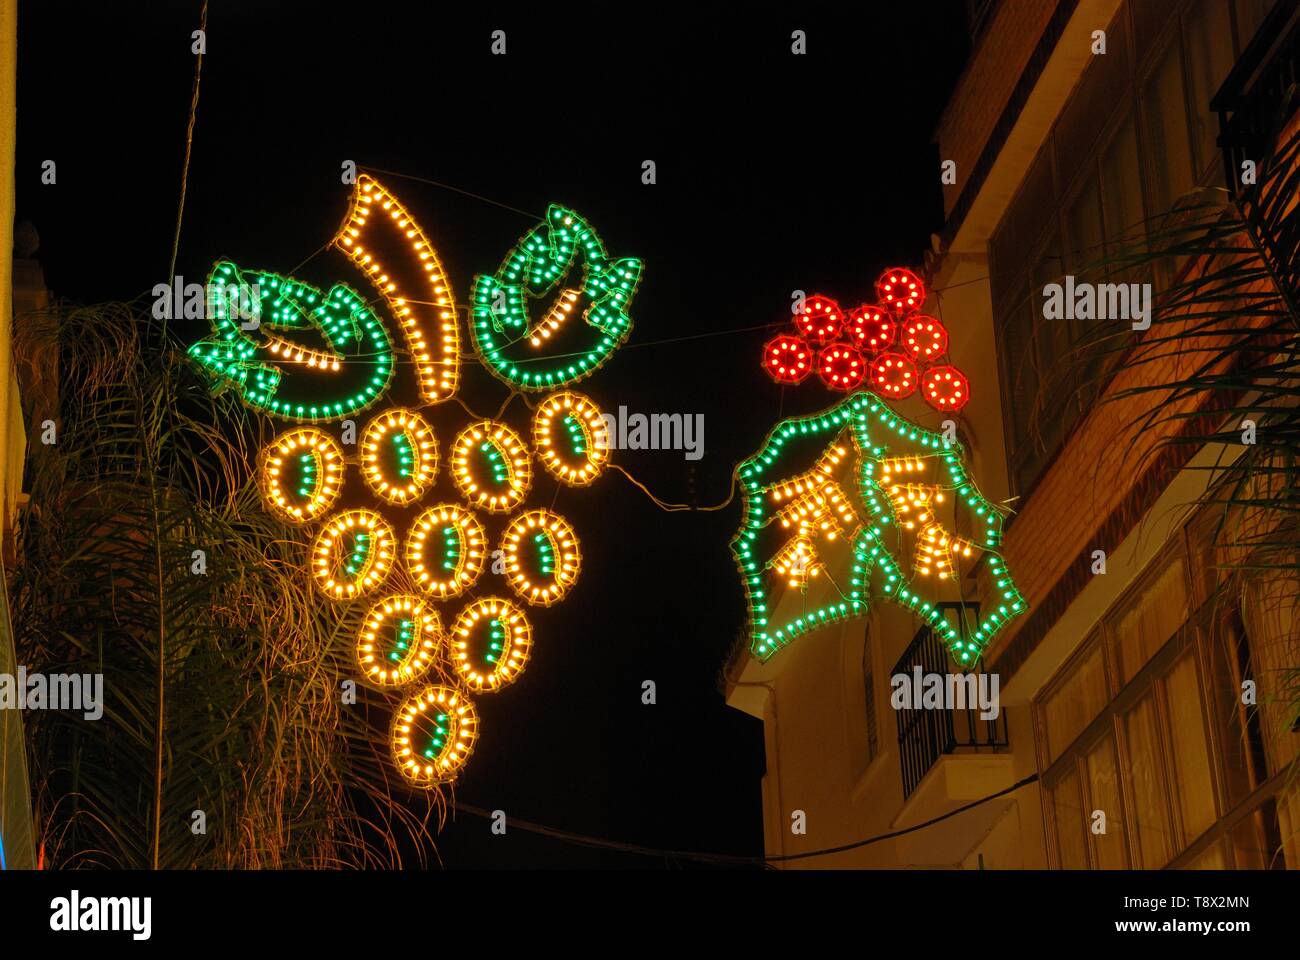 Holly und Trauben Weihnachten Licht Dekoration auf der anderen Straßenseite in der Nacht ausgesetzt, Fuengirola, Costa del Sol, Provinz Malaga, Andalusien, Spanien, Europa. Stockfoto